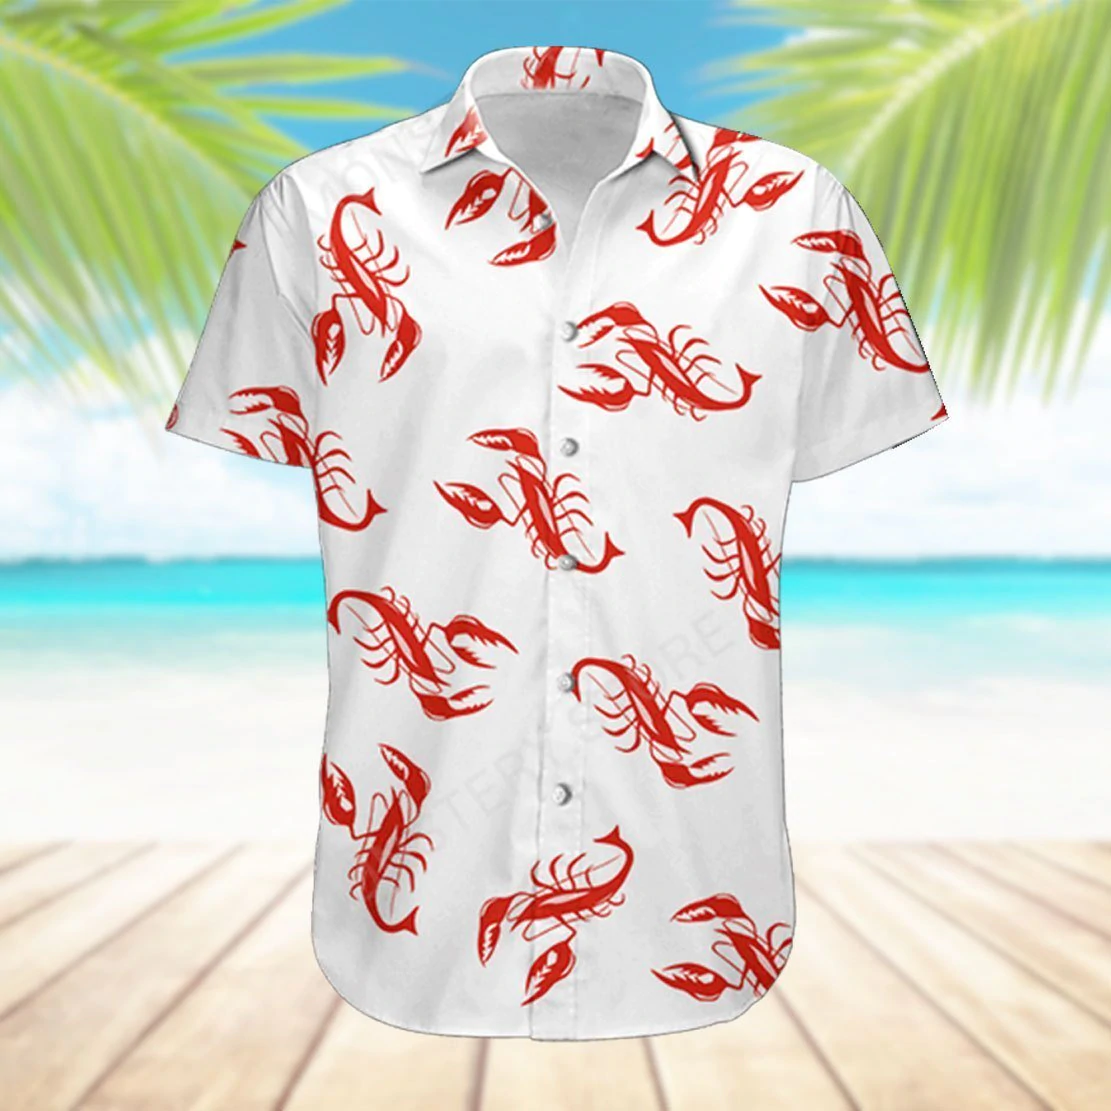 Lobster Kramer Seinfeld Hawaiian Shirt/ lobster shirt/ Kramer lobster shirt